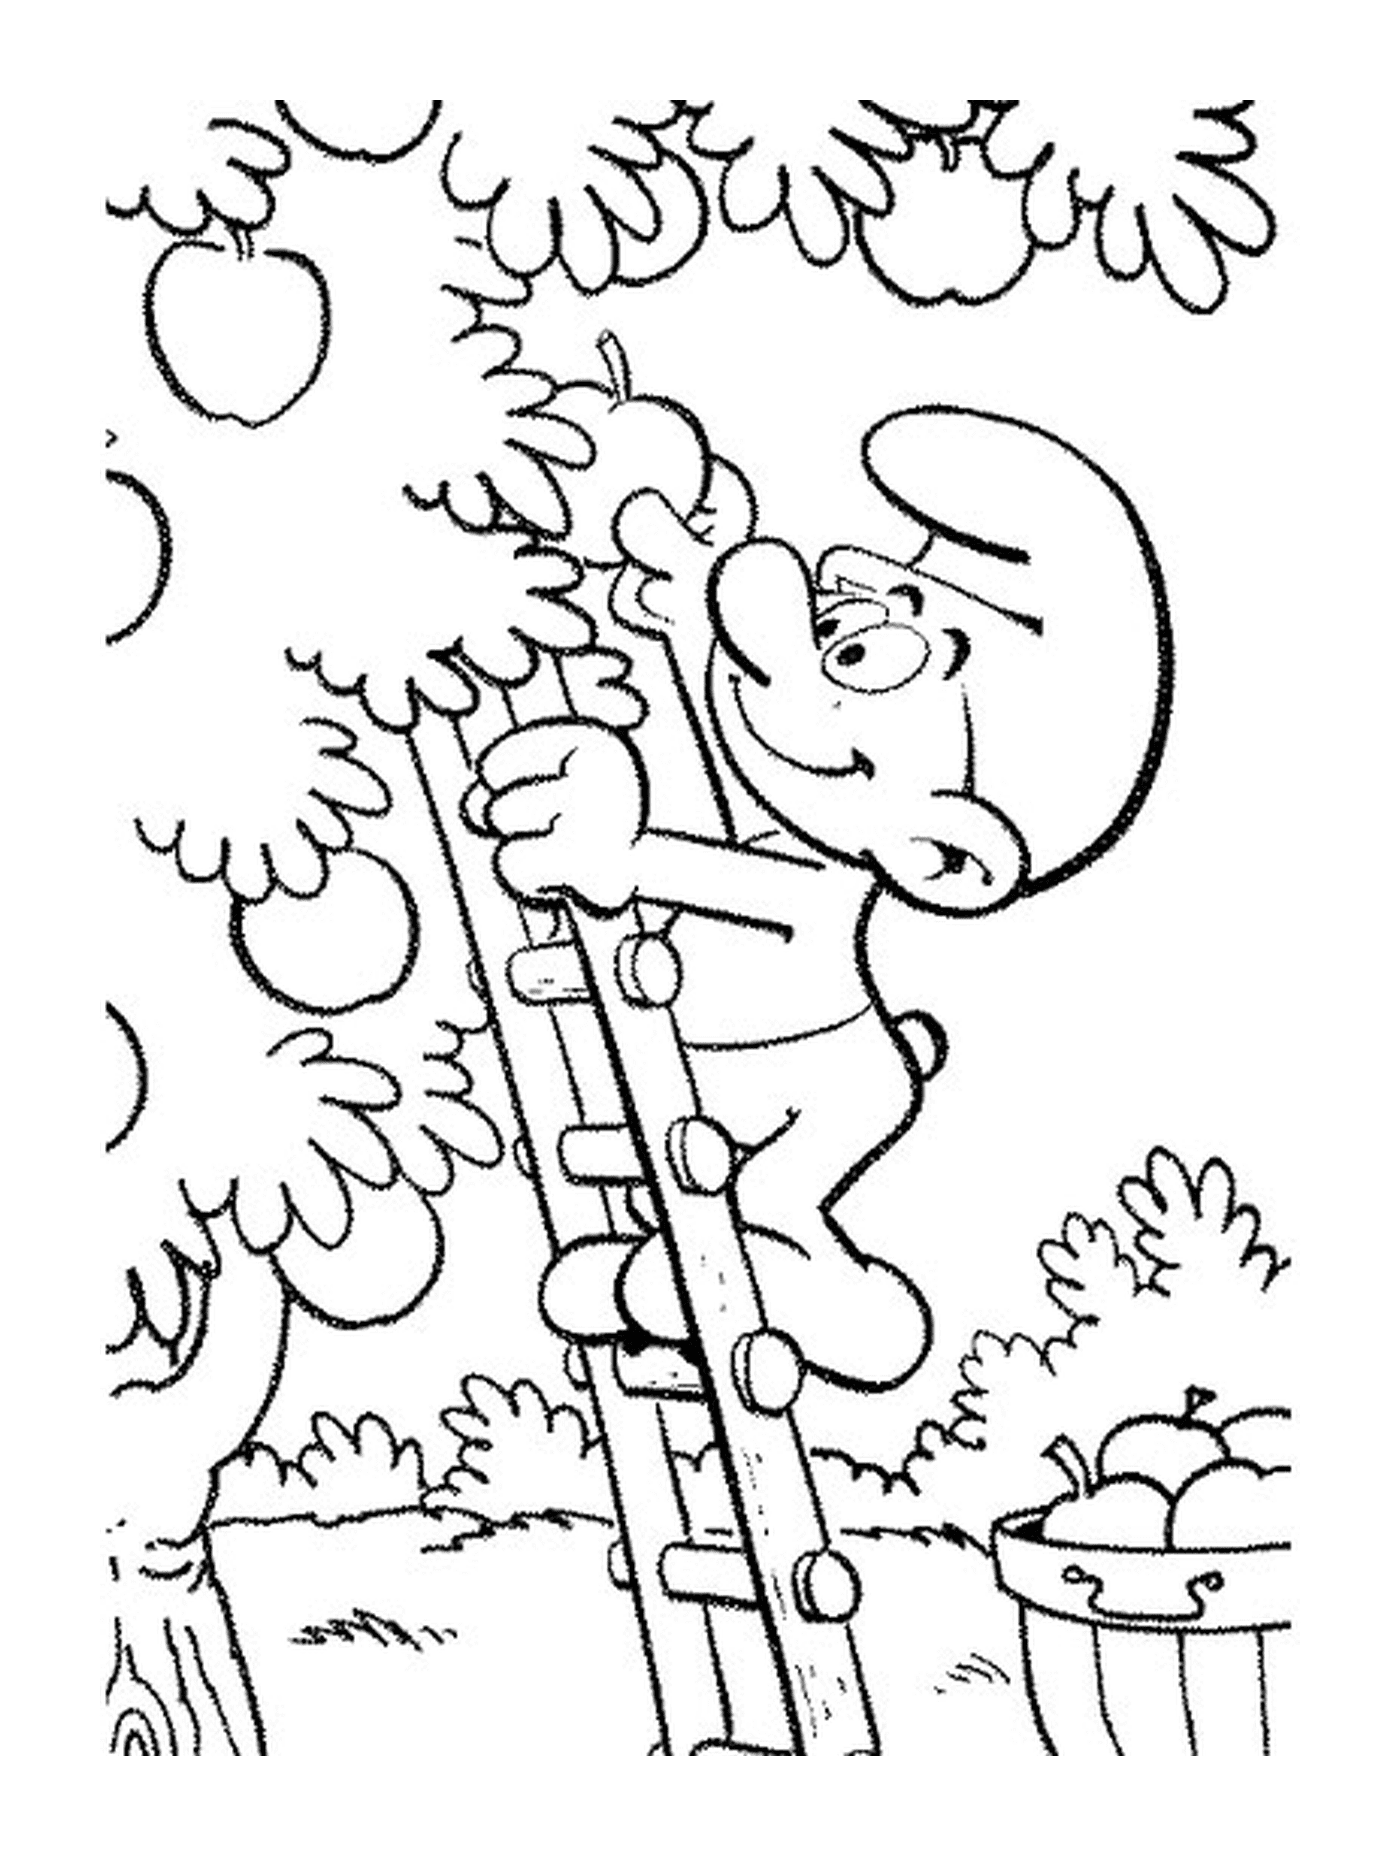  Um Smurf escalando uma escada 